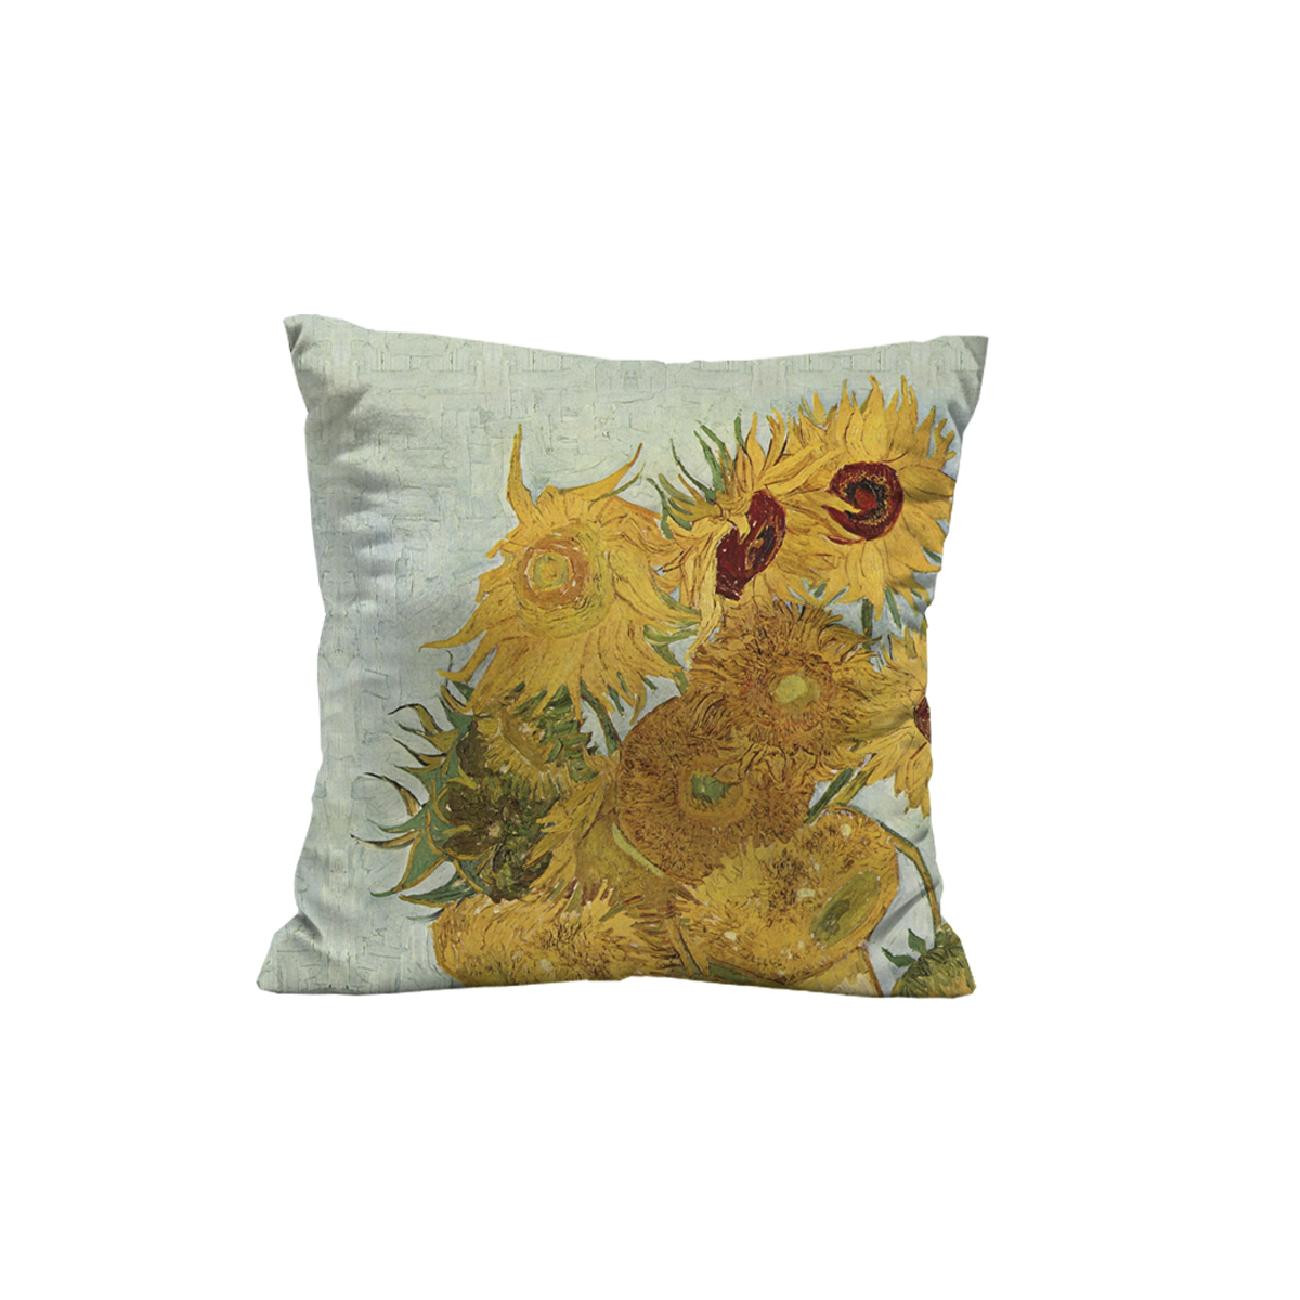 PODUSZKA 45X45 - SŁONECZNIKI (Vincent van Gogh) - tkanina bawełniana - zestaw do uszycia